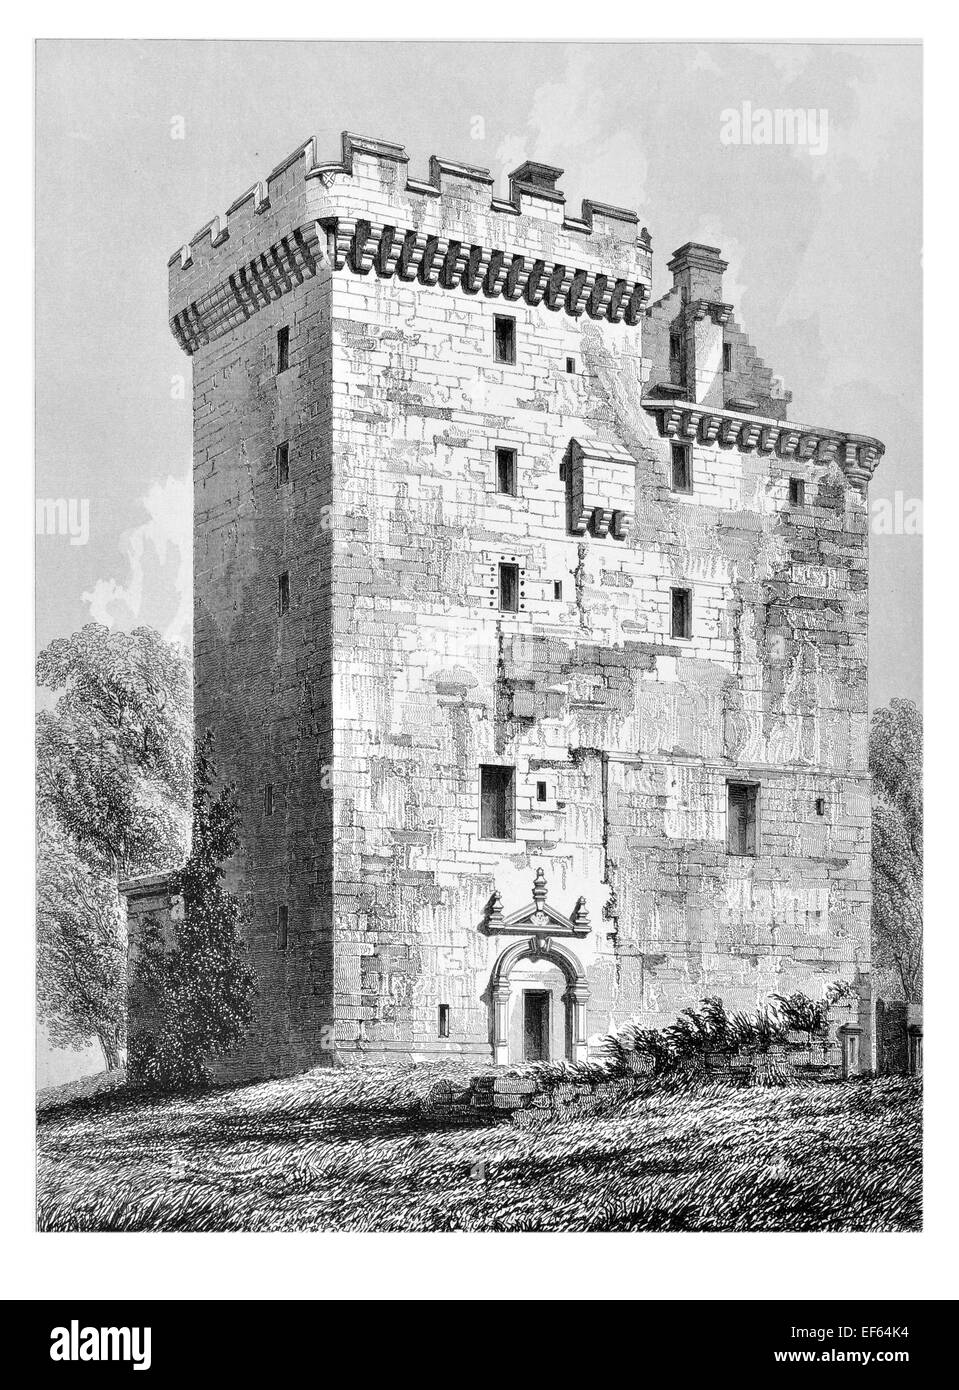 1852 La tour de Clackmannan siège du roi Hill, Clackmannanshire, Centre de l'Écosse. Firth of Forth Banque D'Images